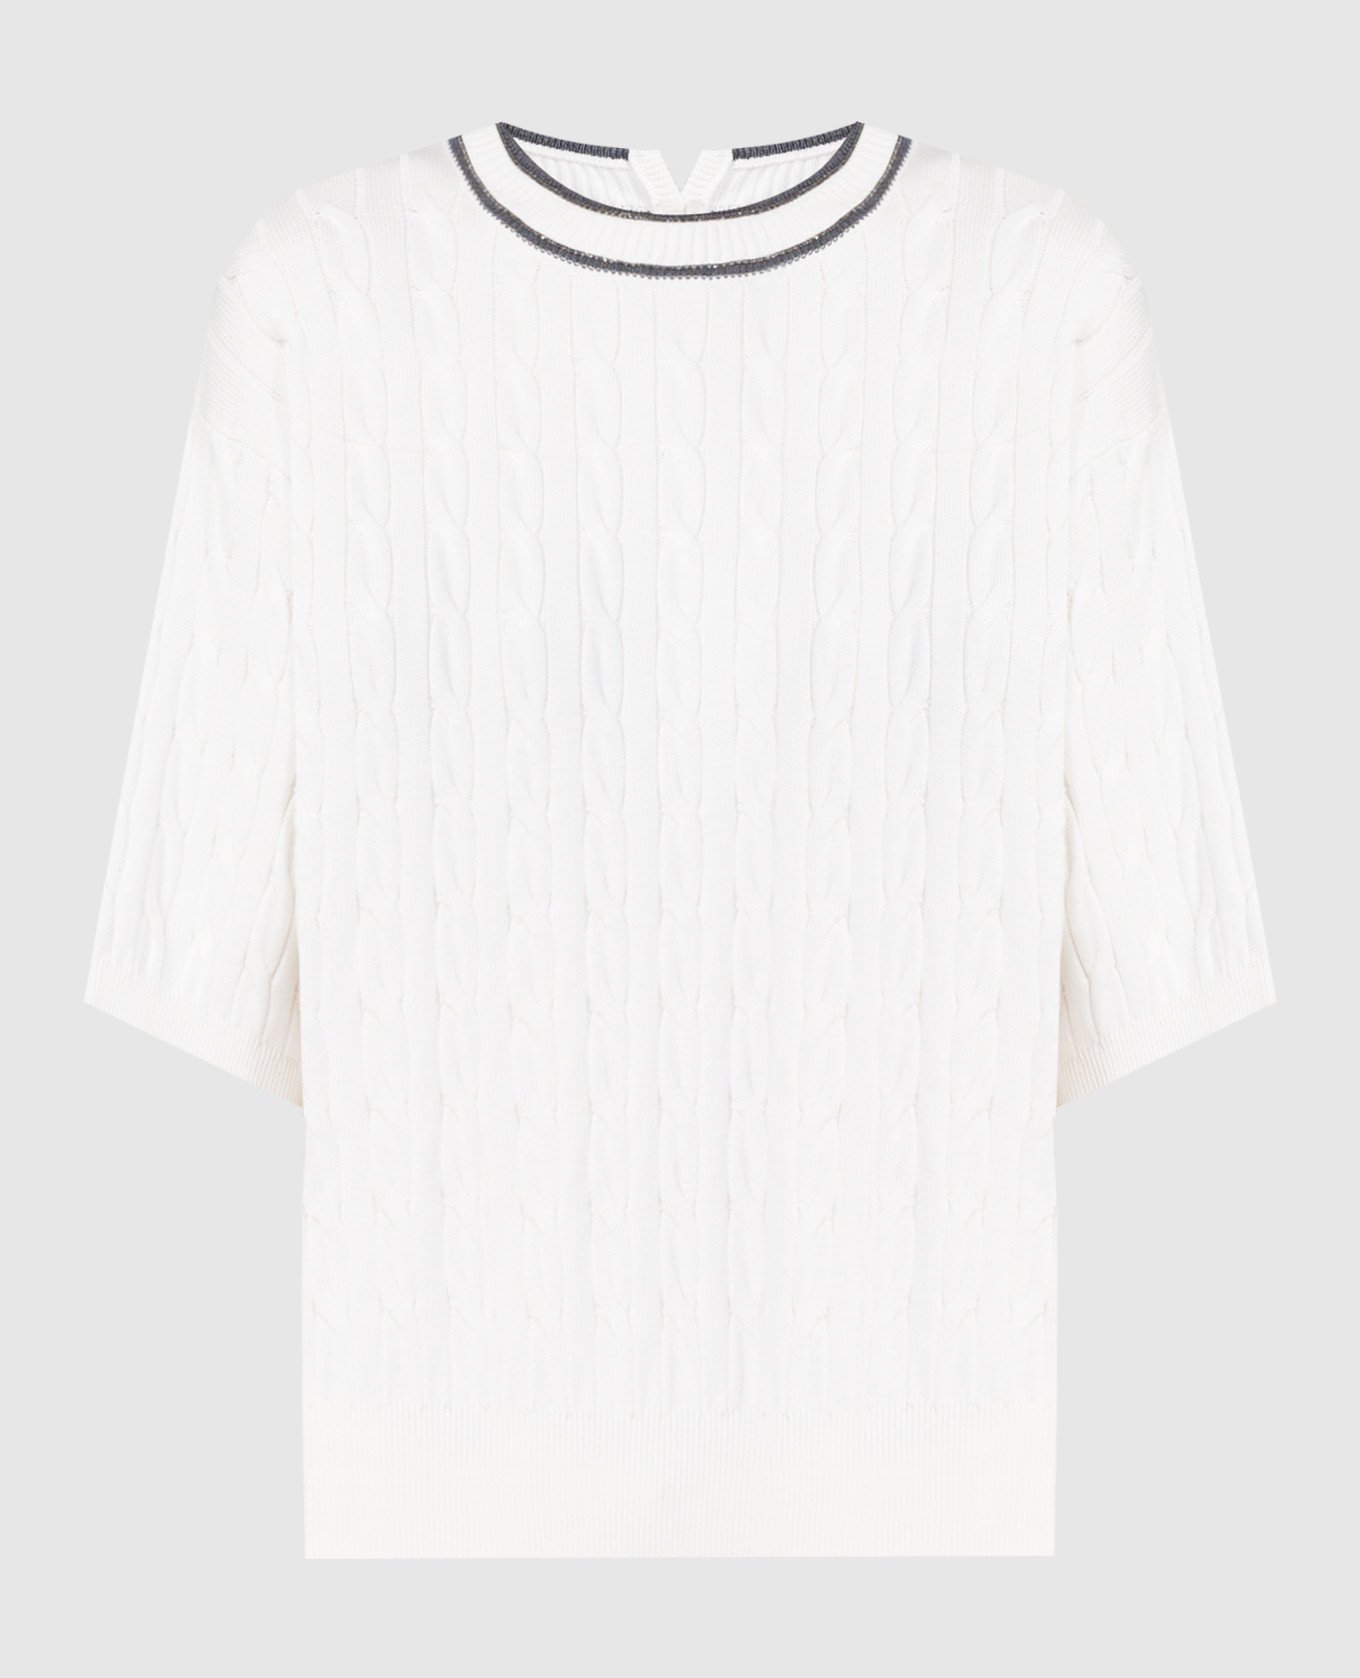 Biała koszulka w teksturowany wzór z łańcuszkiem typu monil